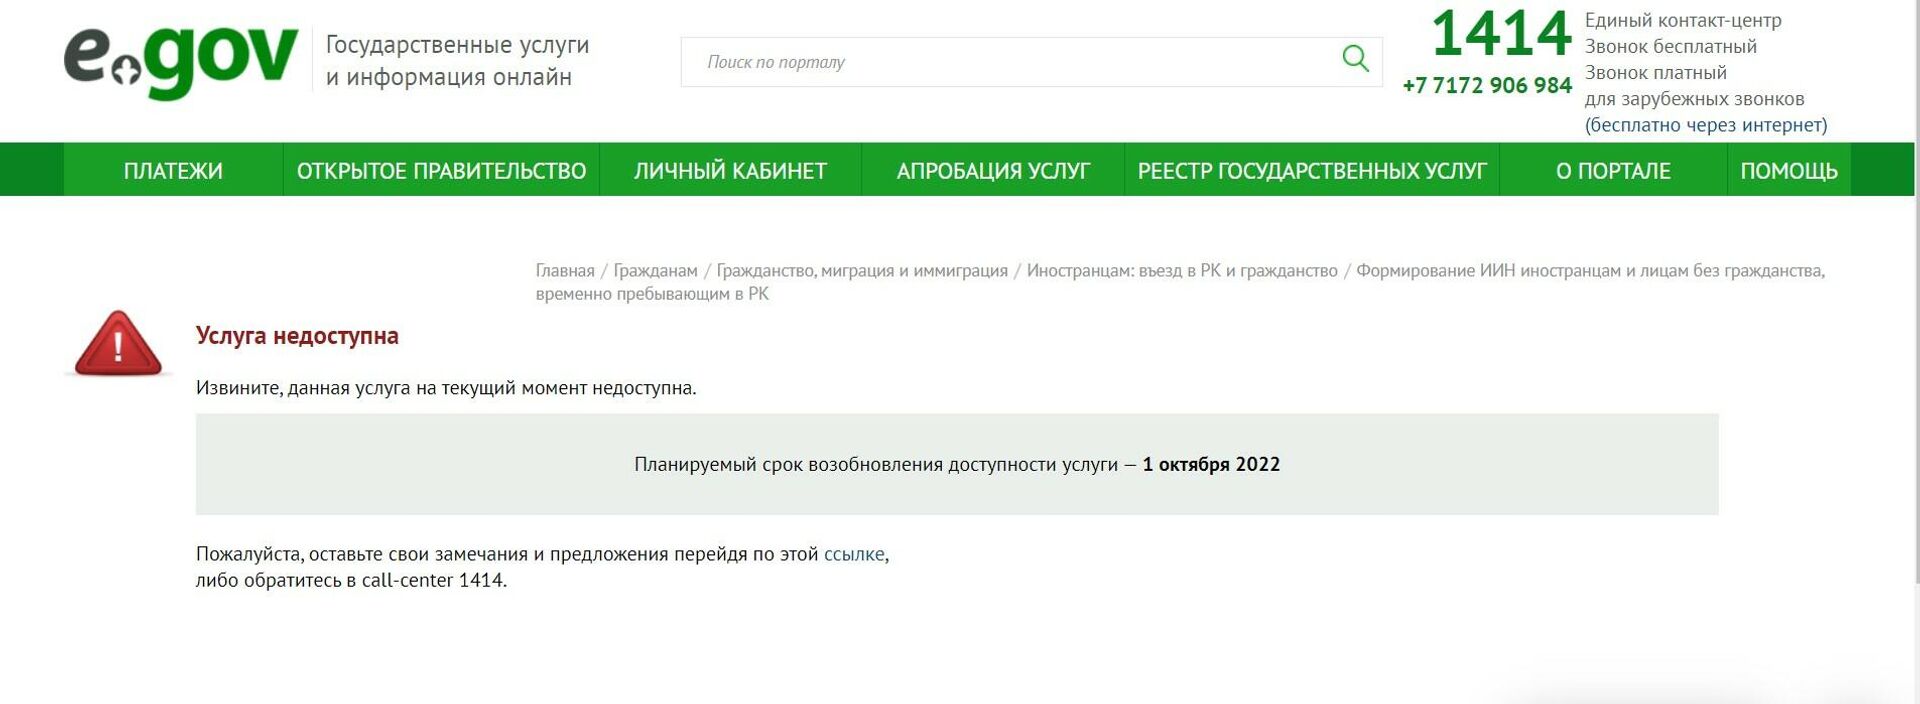 Услуга получения ИИН для иностранных граждан временно недоступна на портале Egov - Sputnik Казахстан, 1920, 26.05.2022